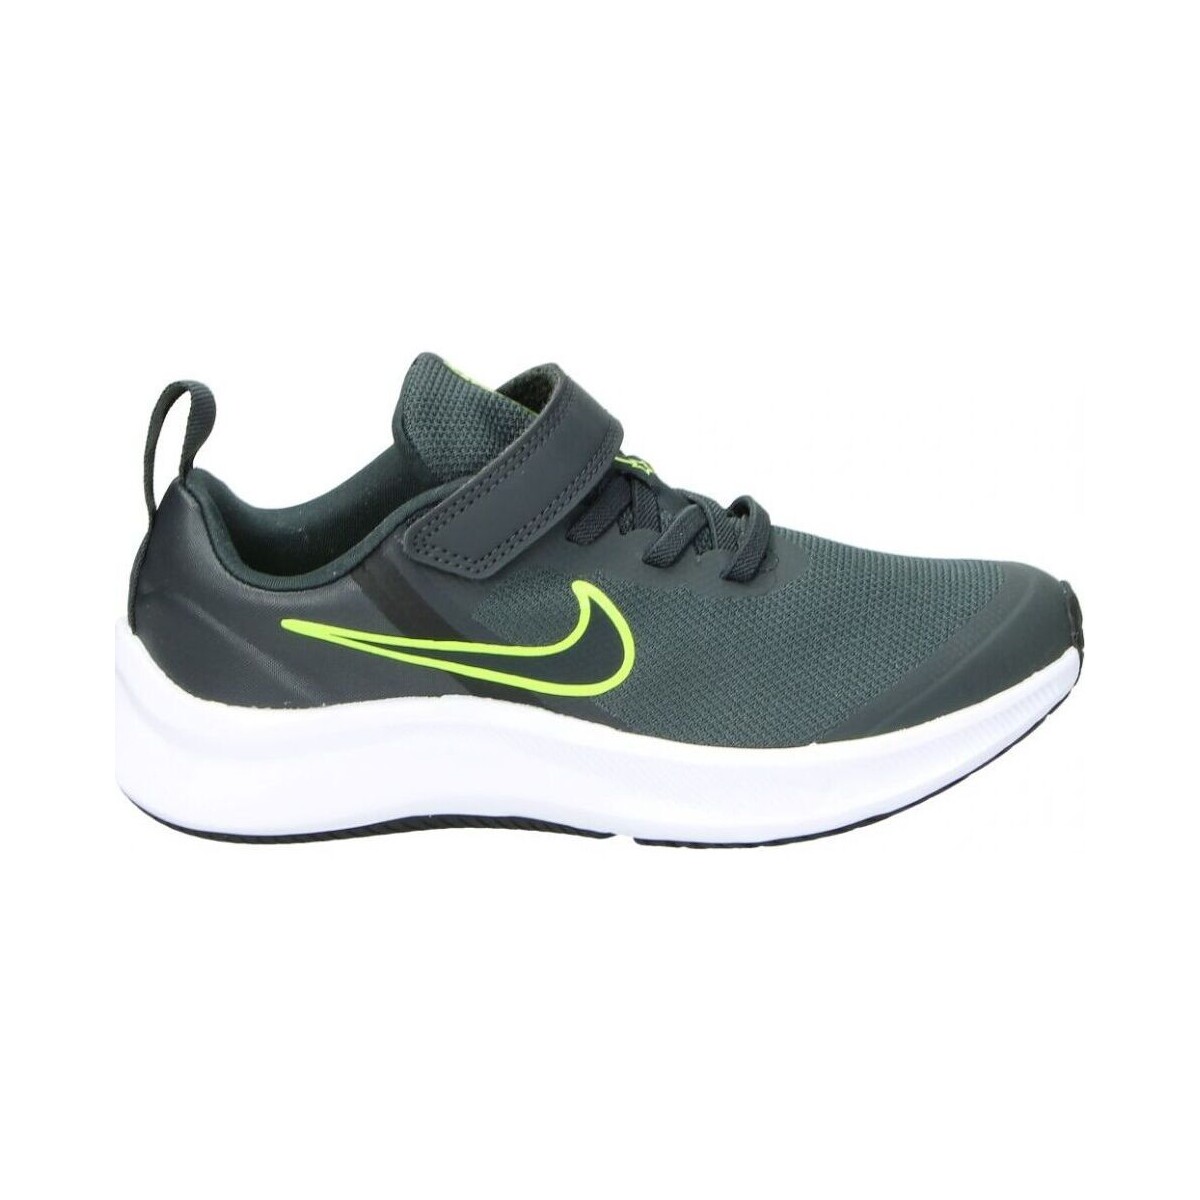 Zapatos Niños Deportivas Moda Nike DA2777-004 Gris